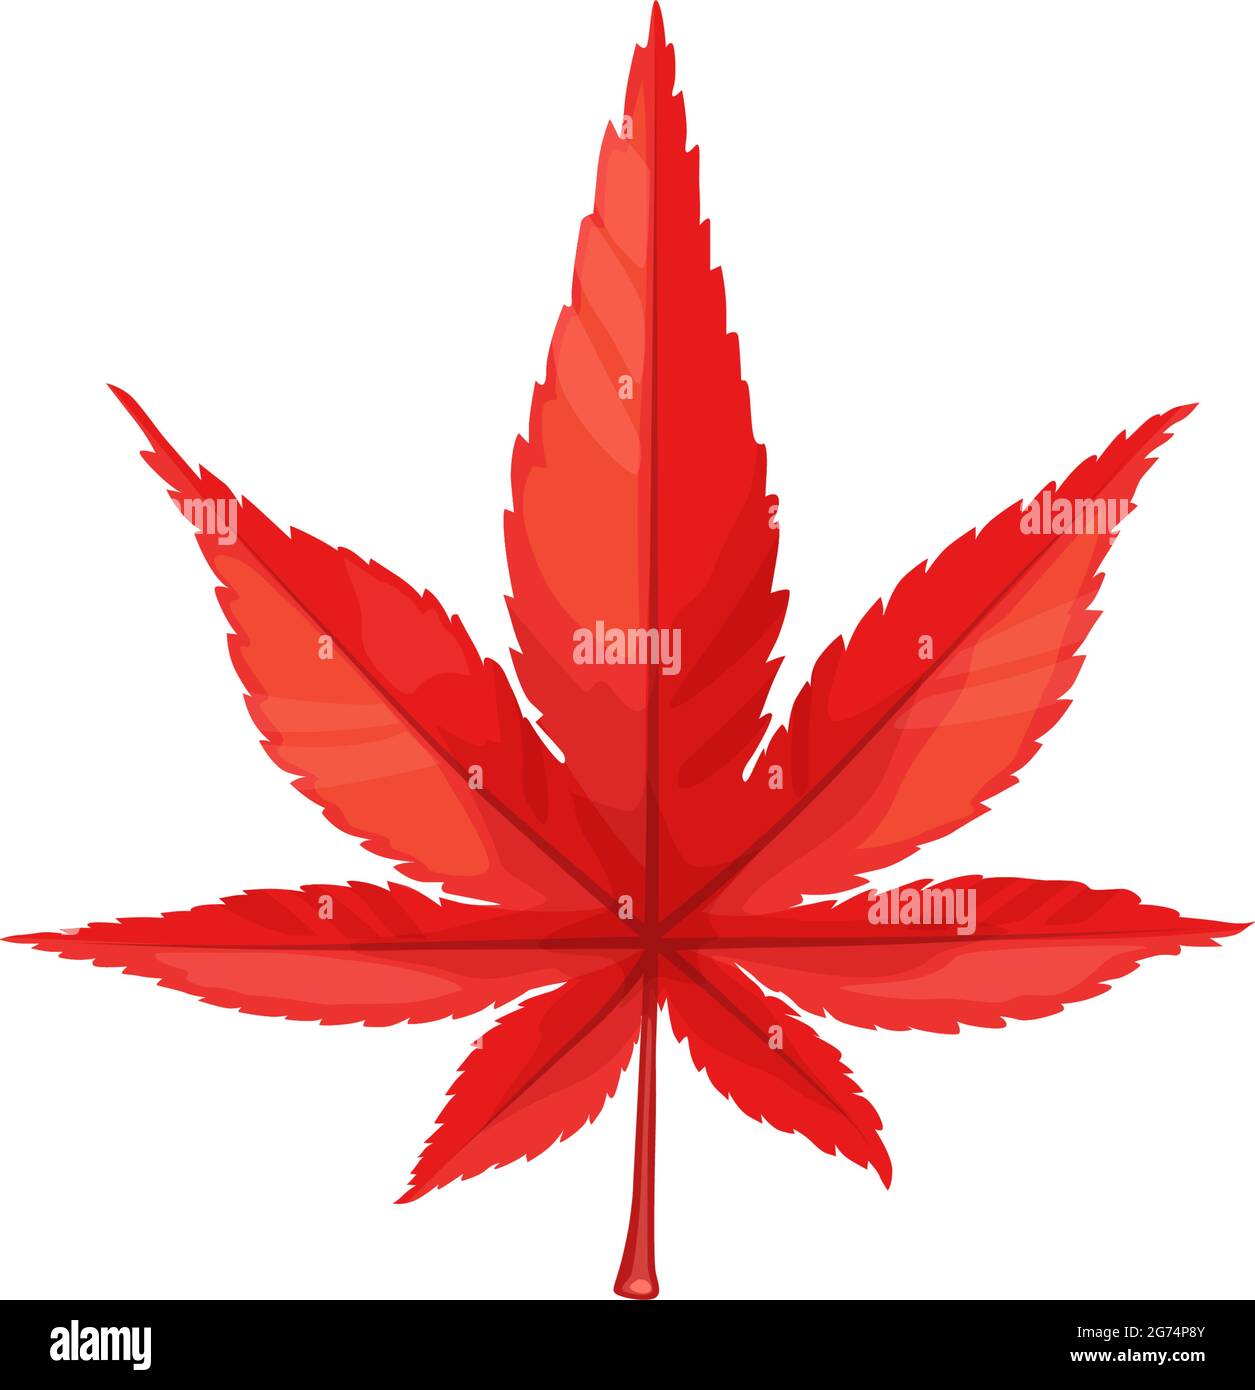 Herbst Ahornblatt Vektor-Symbol, Cartoon Laub, gefallenen Baum Blatt der roten Farbe, natürliches Design-Element isoliert botanischen Objekt auf weißem Hintergrund, s Stock Vektor